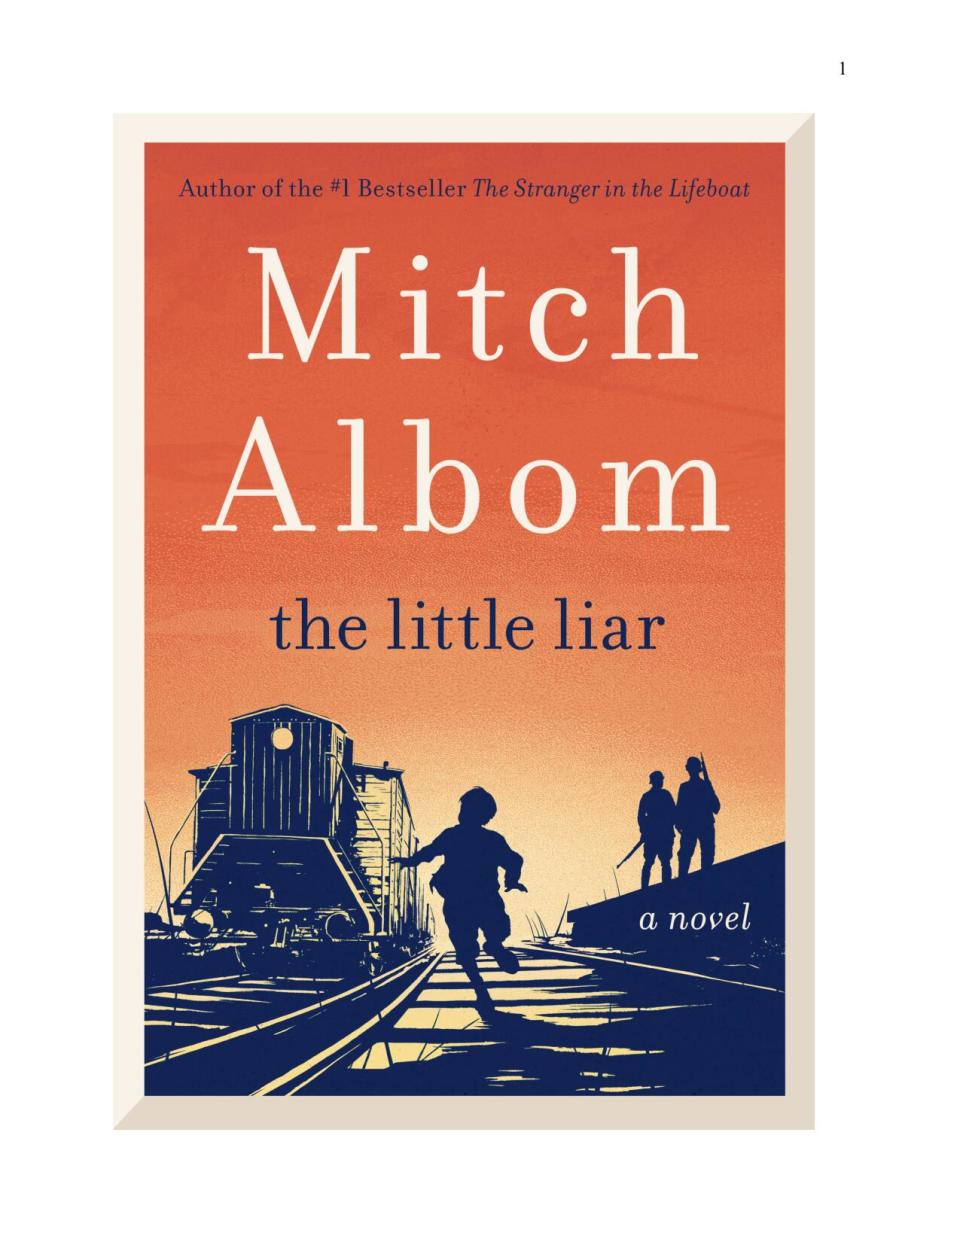 "The Little Liar," written by Free Press columnist Mitch Albom